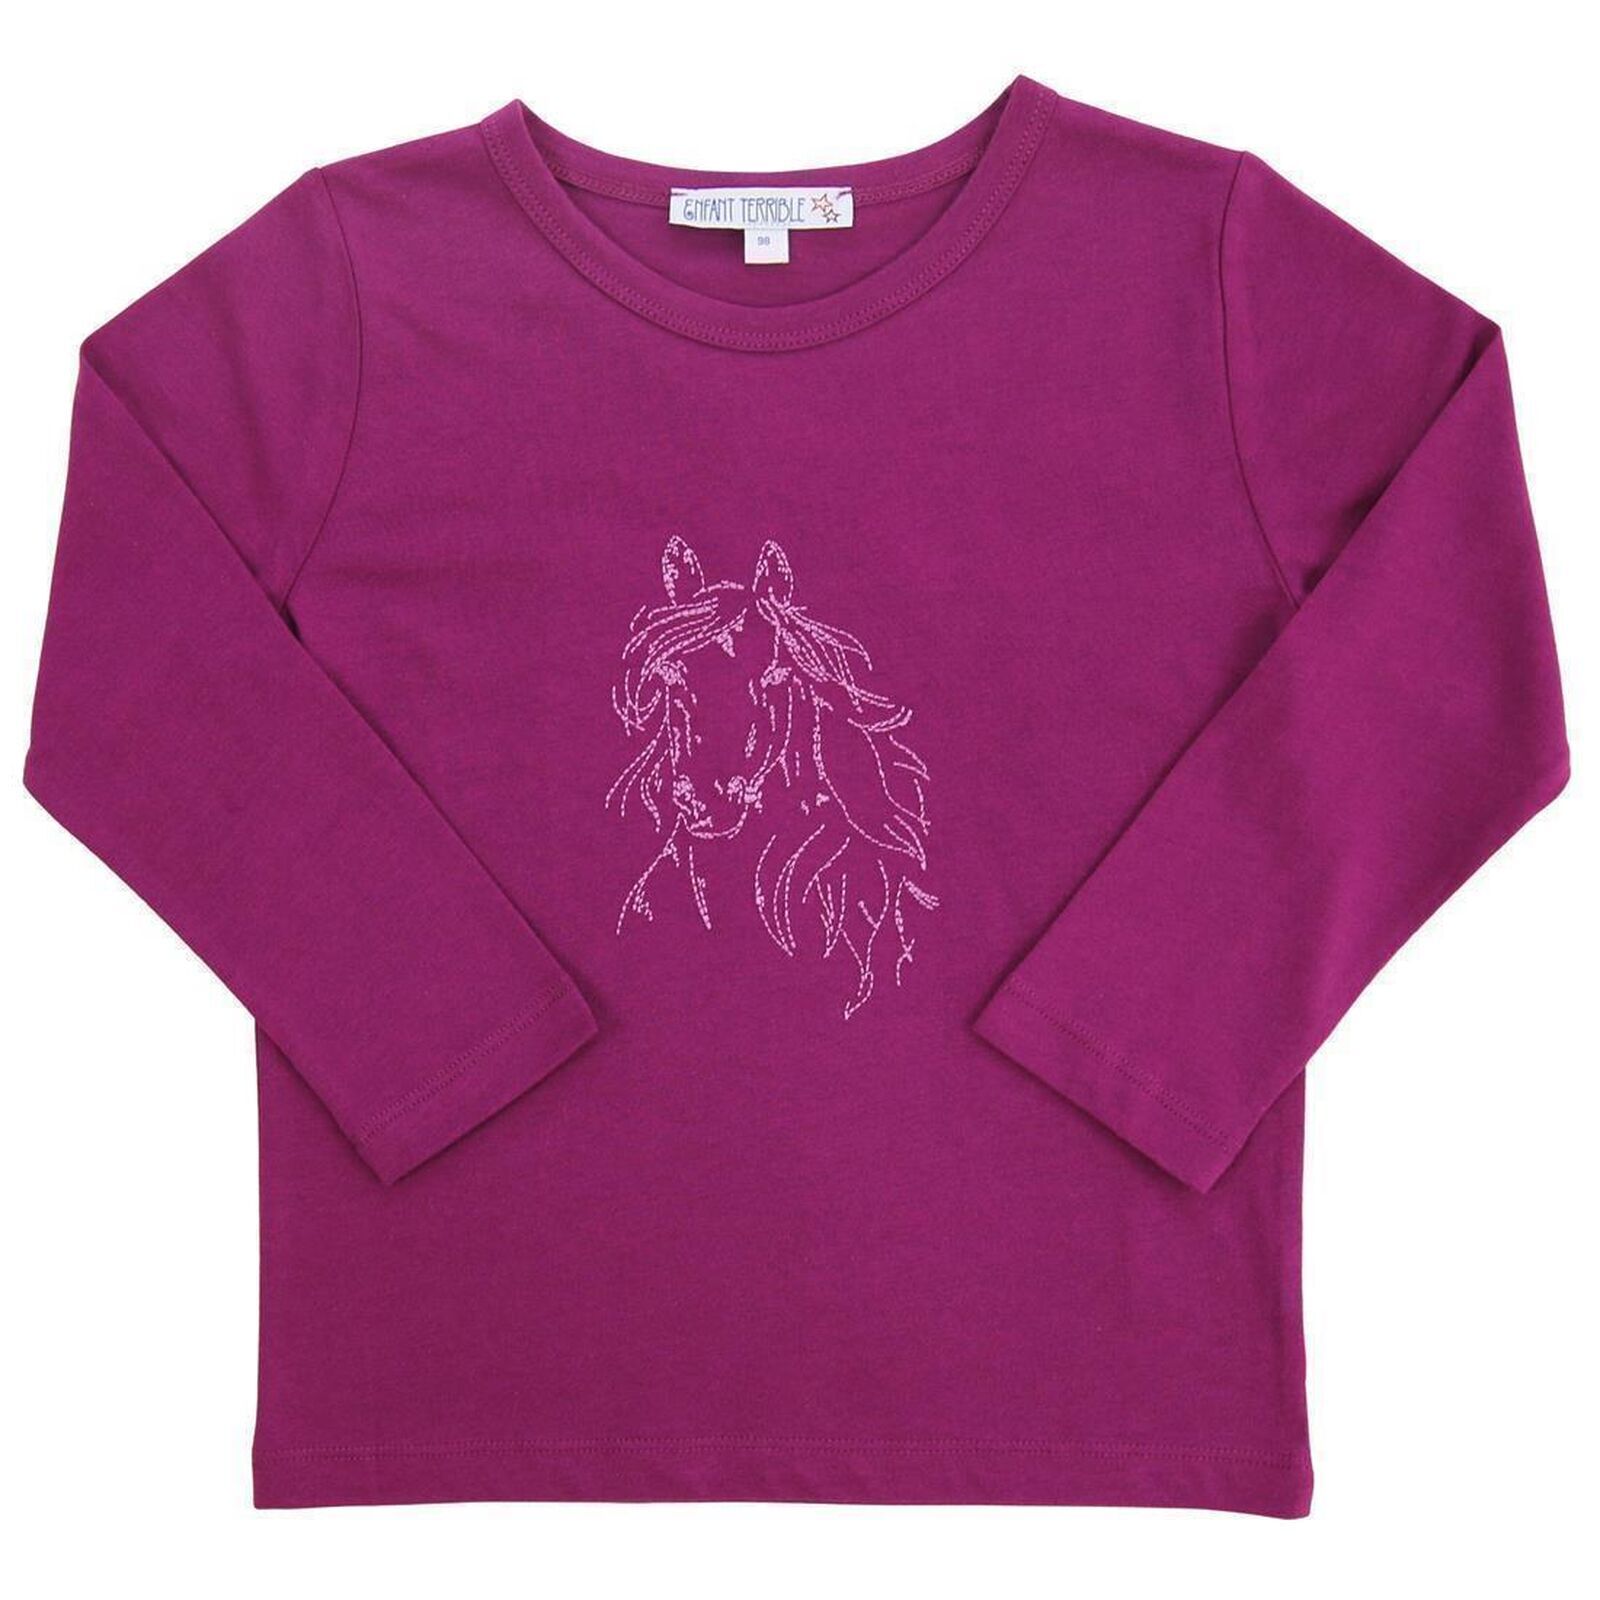 Langarm Shirt mit Pferdestickerei purple von ENFANT TERRIBLE